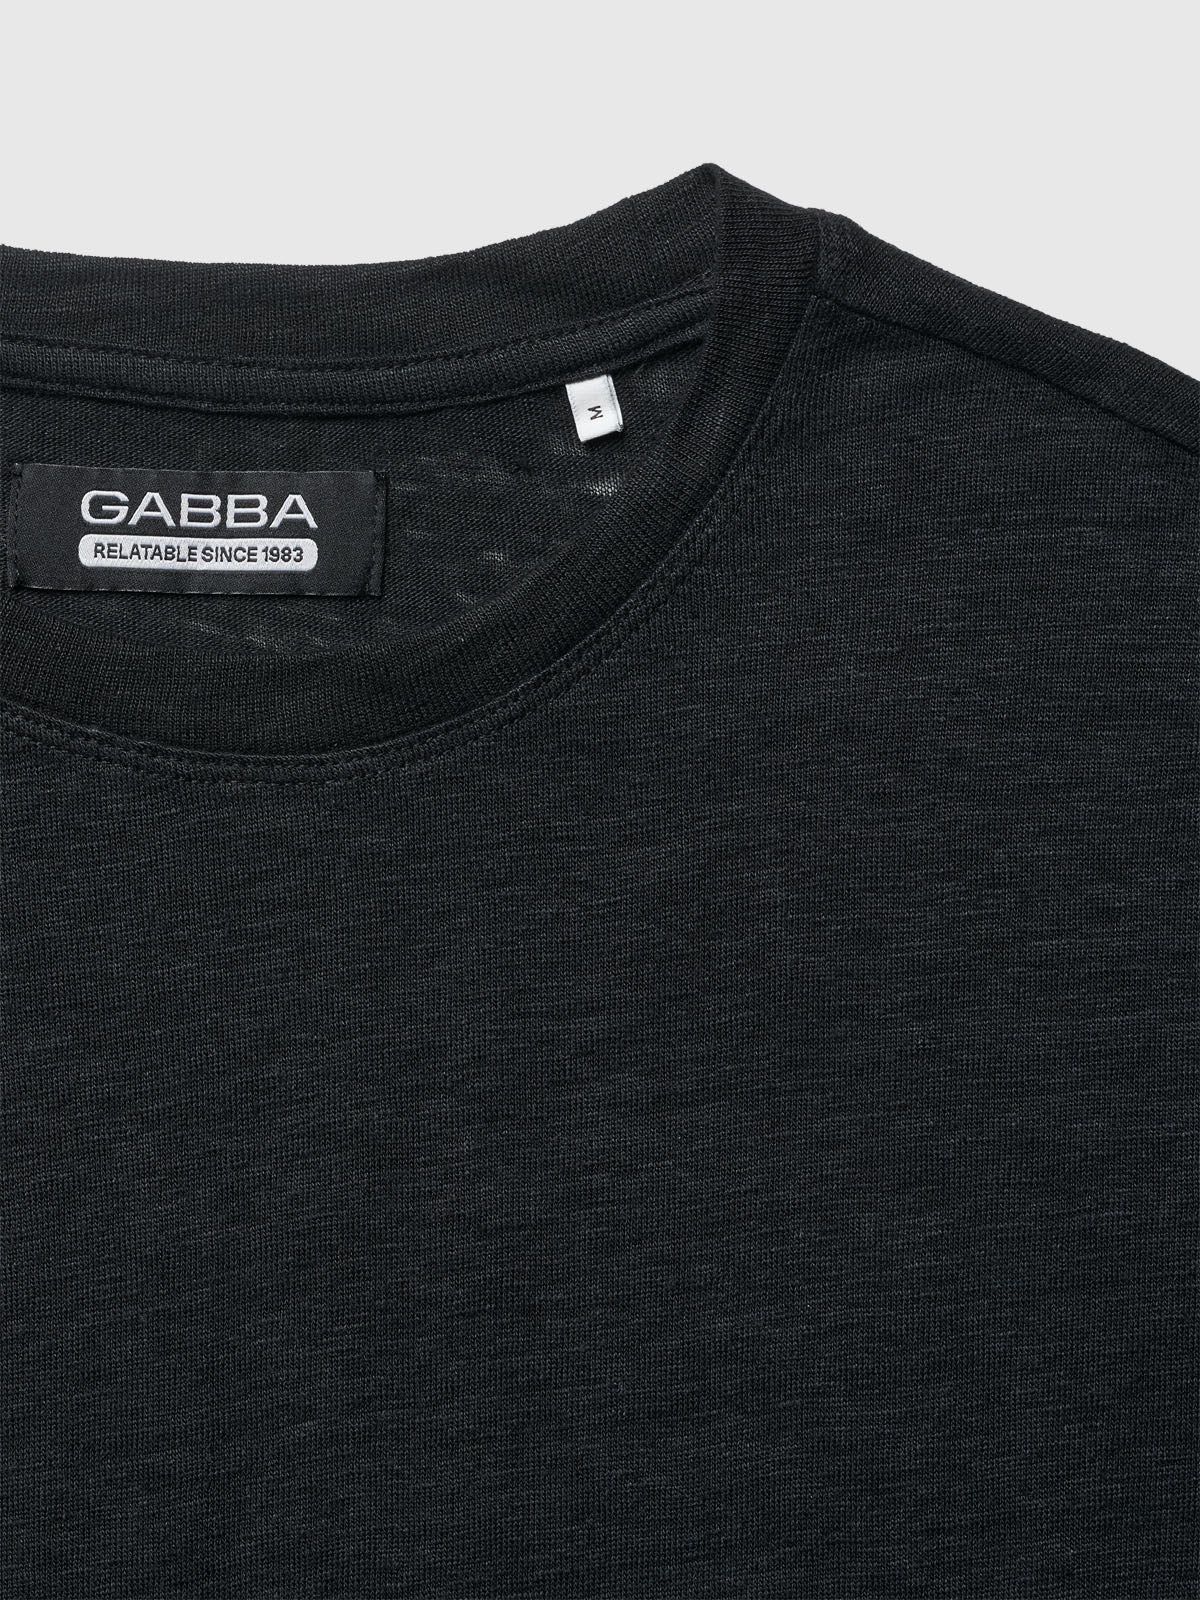 Duke linnen t-shirt black - Gabba